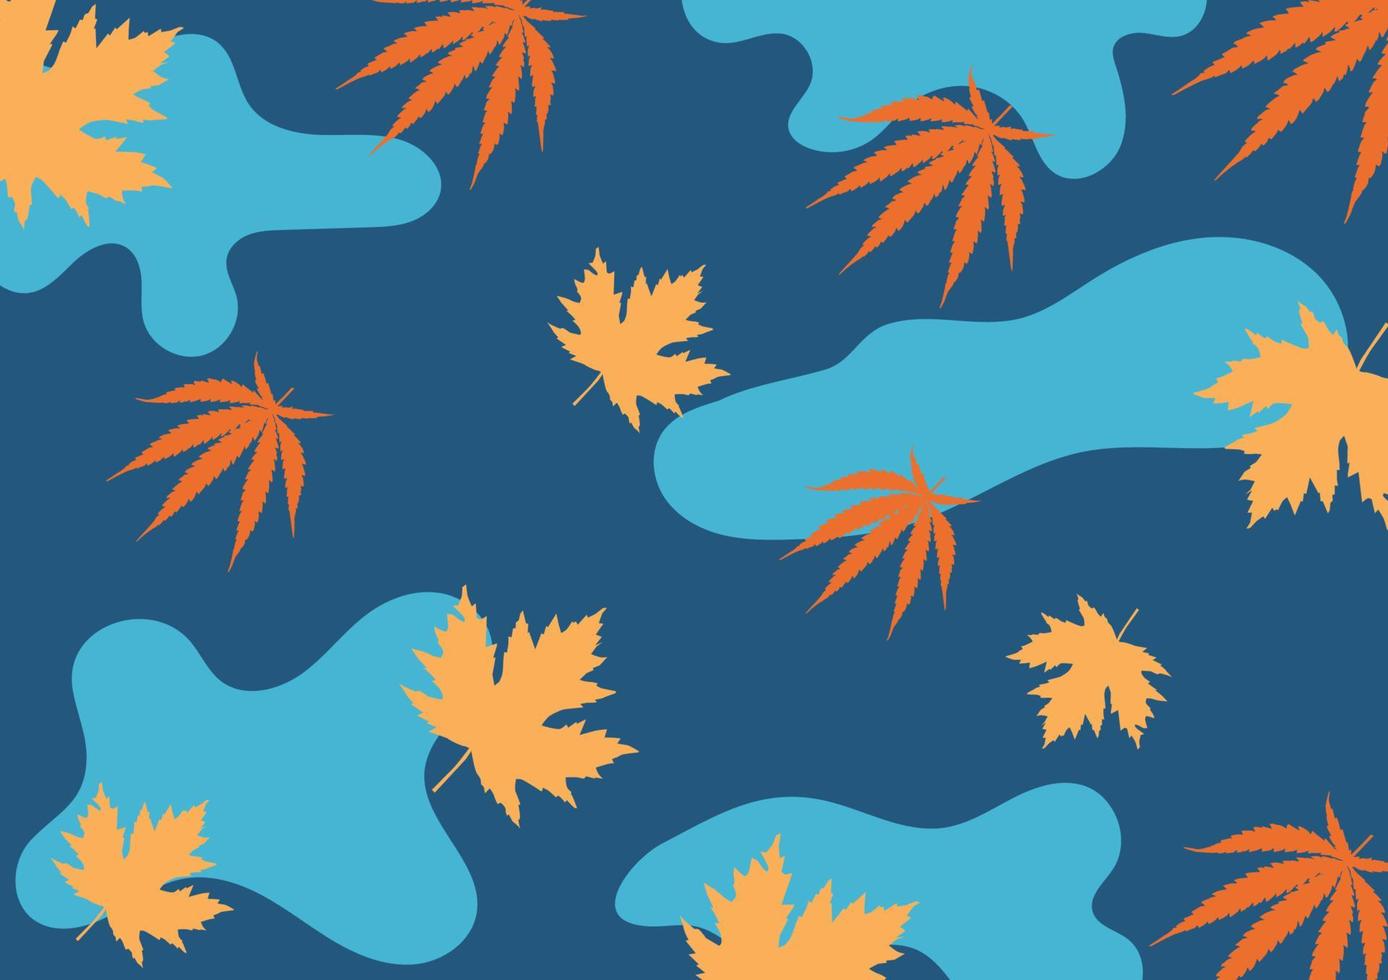 naturlig bakgrund av löv, grenar och organisk former i sommar tona, orange, blå och grön .vektor illustration. vektor